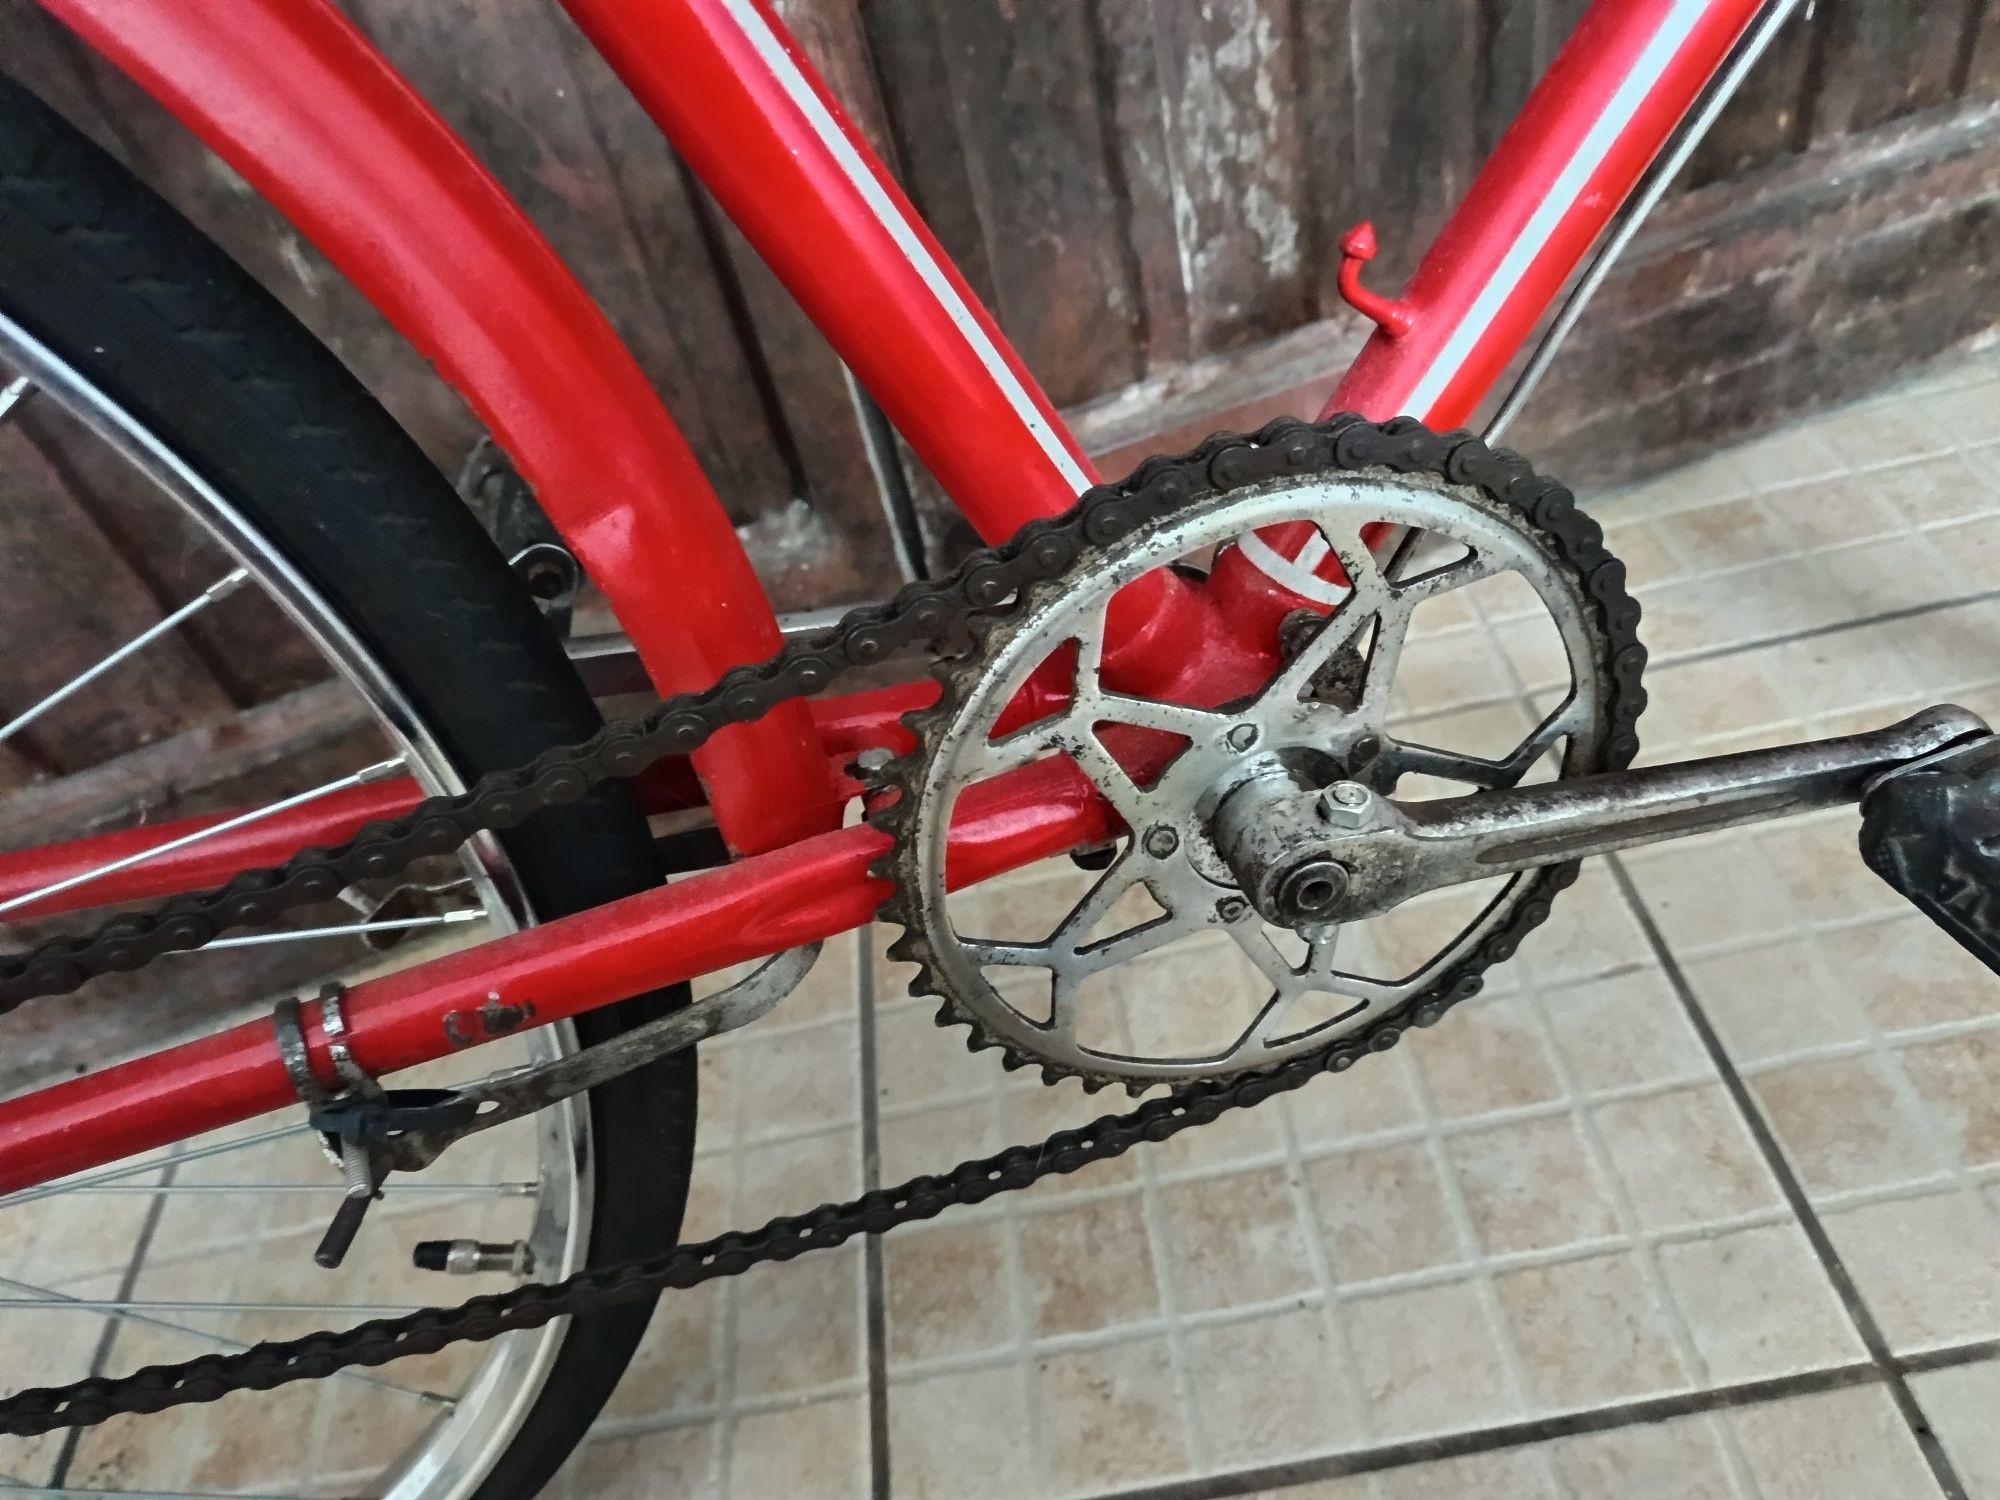 Bicicleta Pasteleira cibor